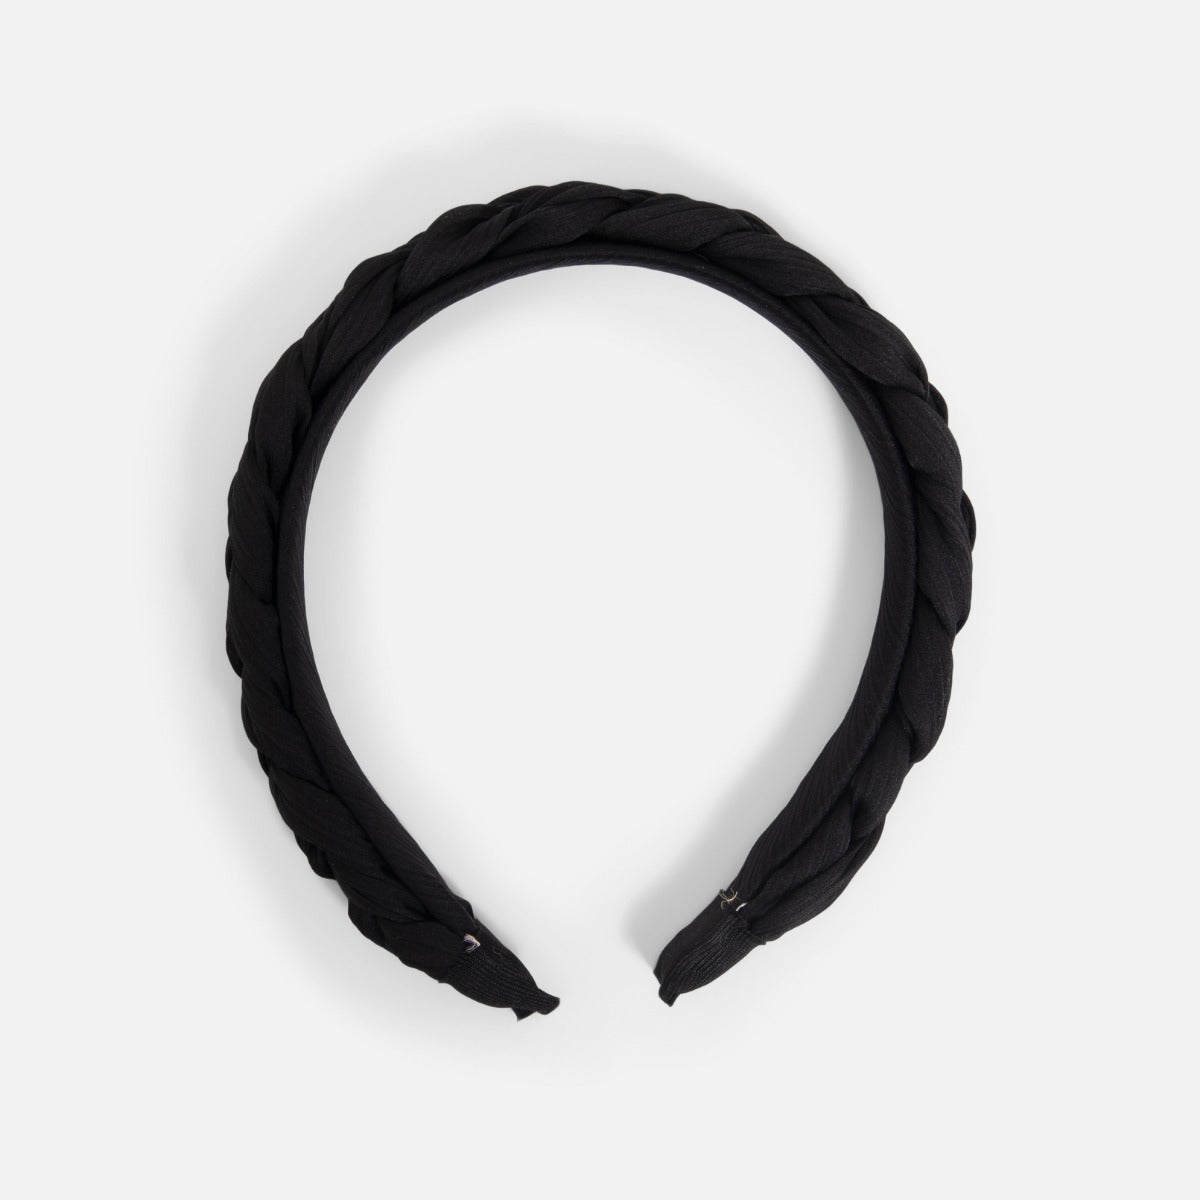 Black braided  hair hoop 